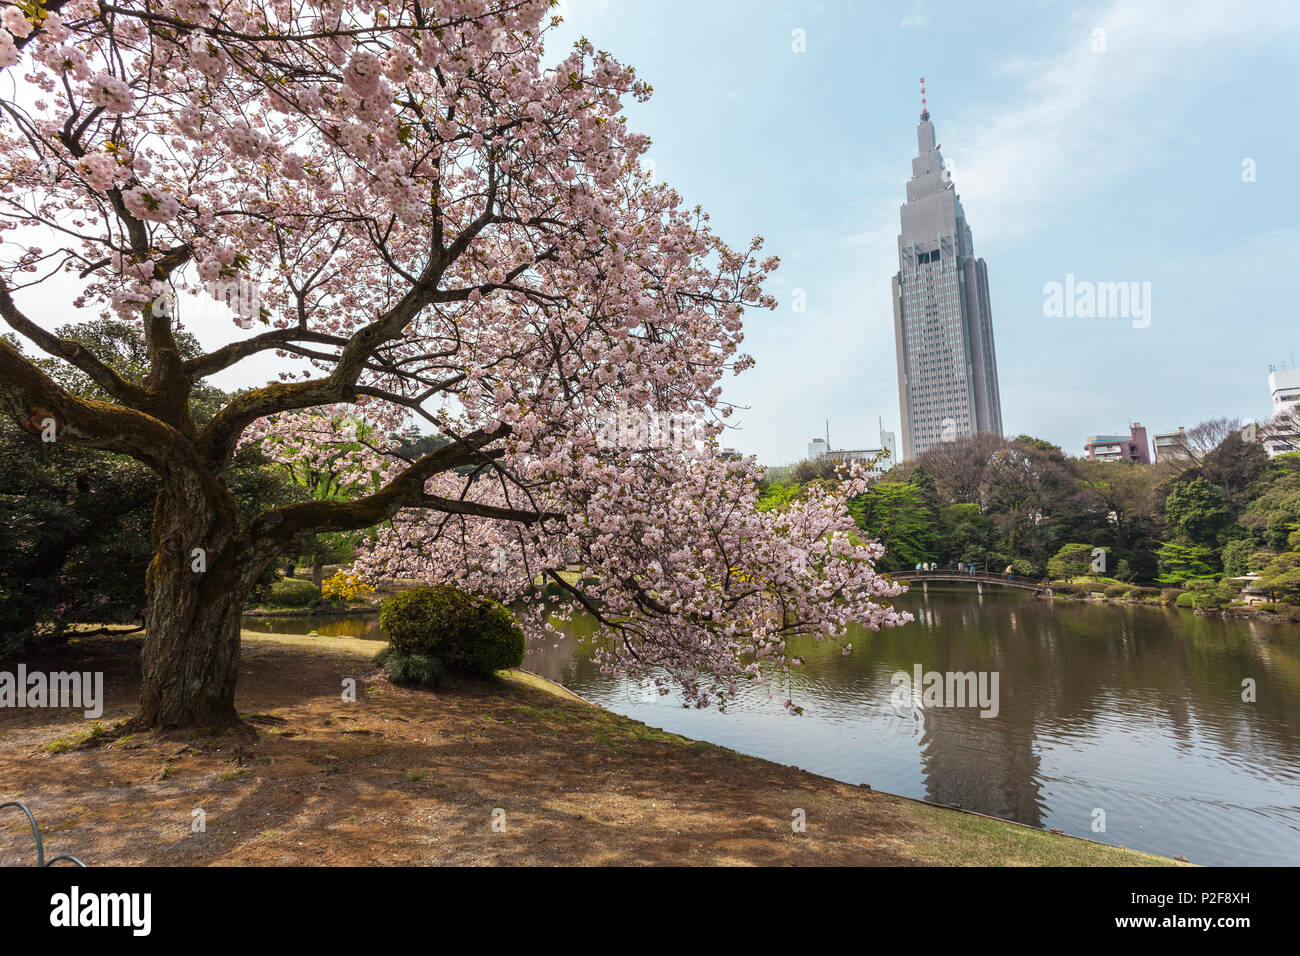 Old cherry tree in blossom at pond of Shinjuku Gyoen, Shinjuku, Tokyo, Japan Stock Photo